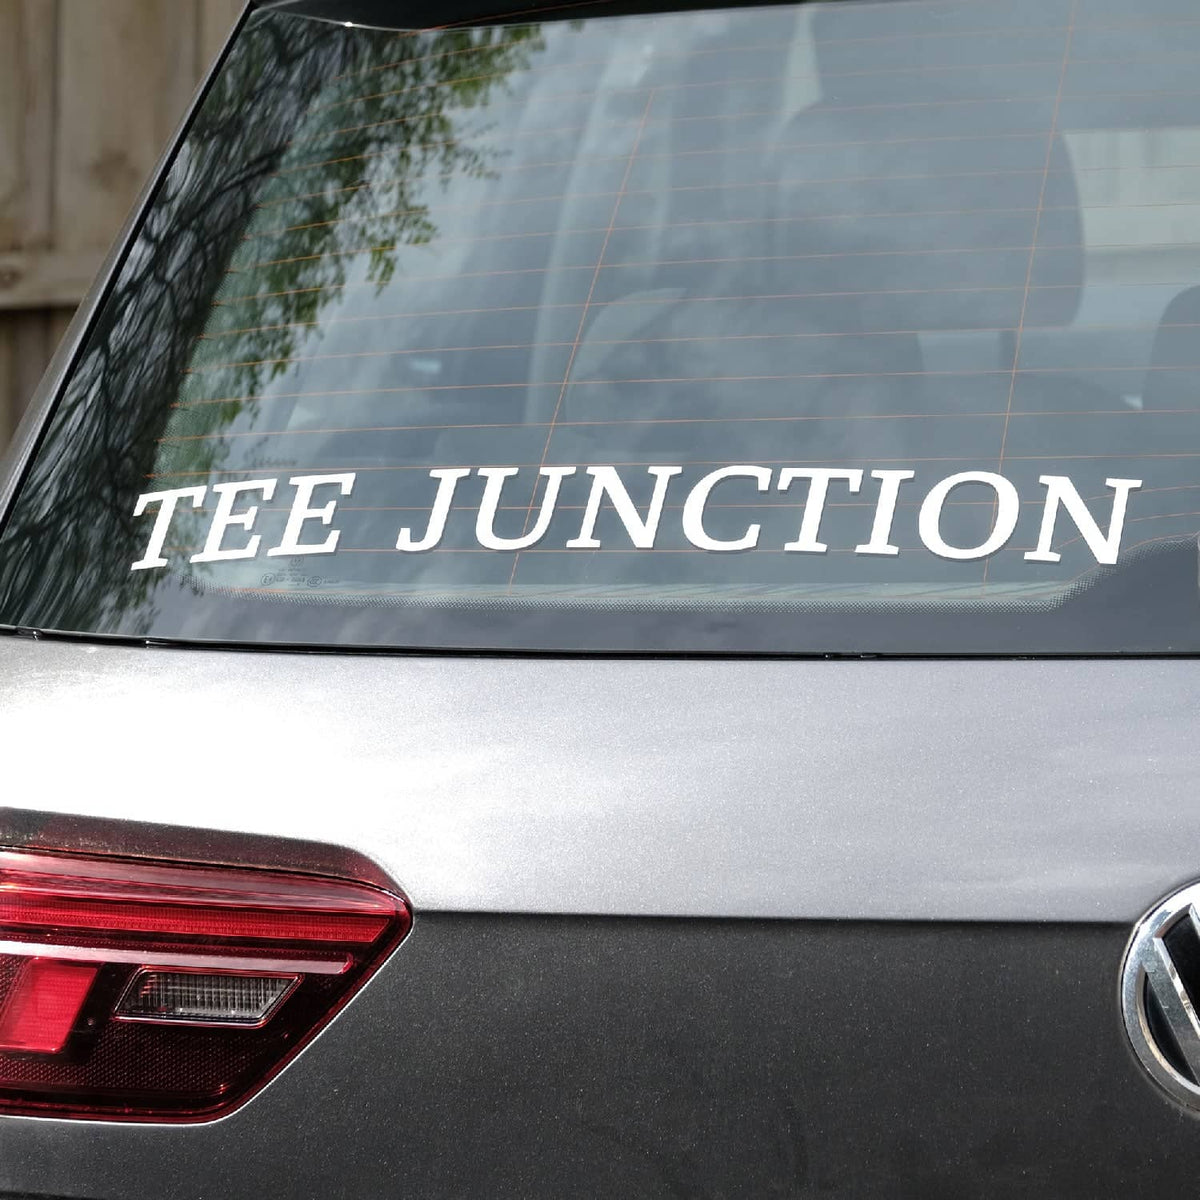 Tee Junction lettering sticker on a car rear windshield.